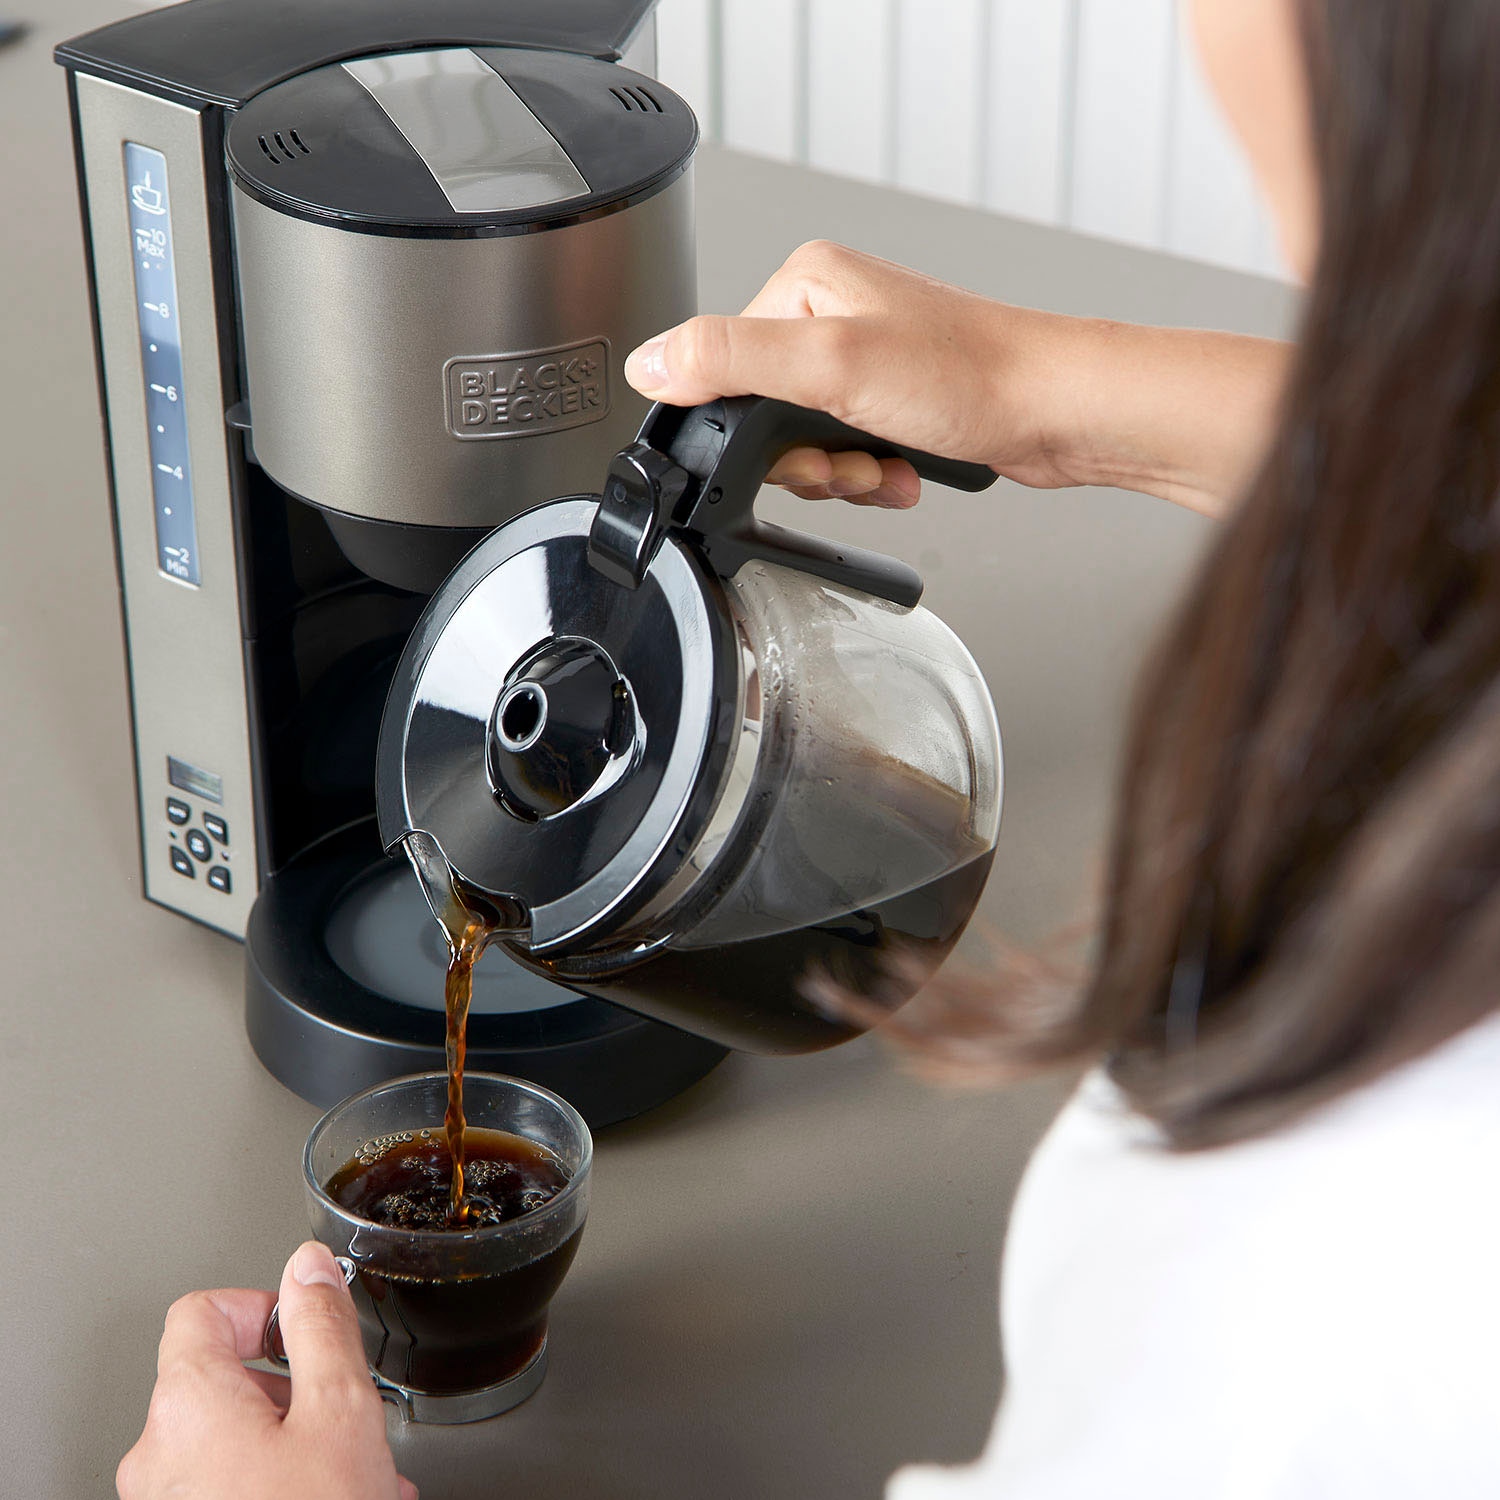 Black + Decker Filterkaffeemaschine »BXCO1000E«, 1,25 l Kaffeekanne, Permanentfilter